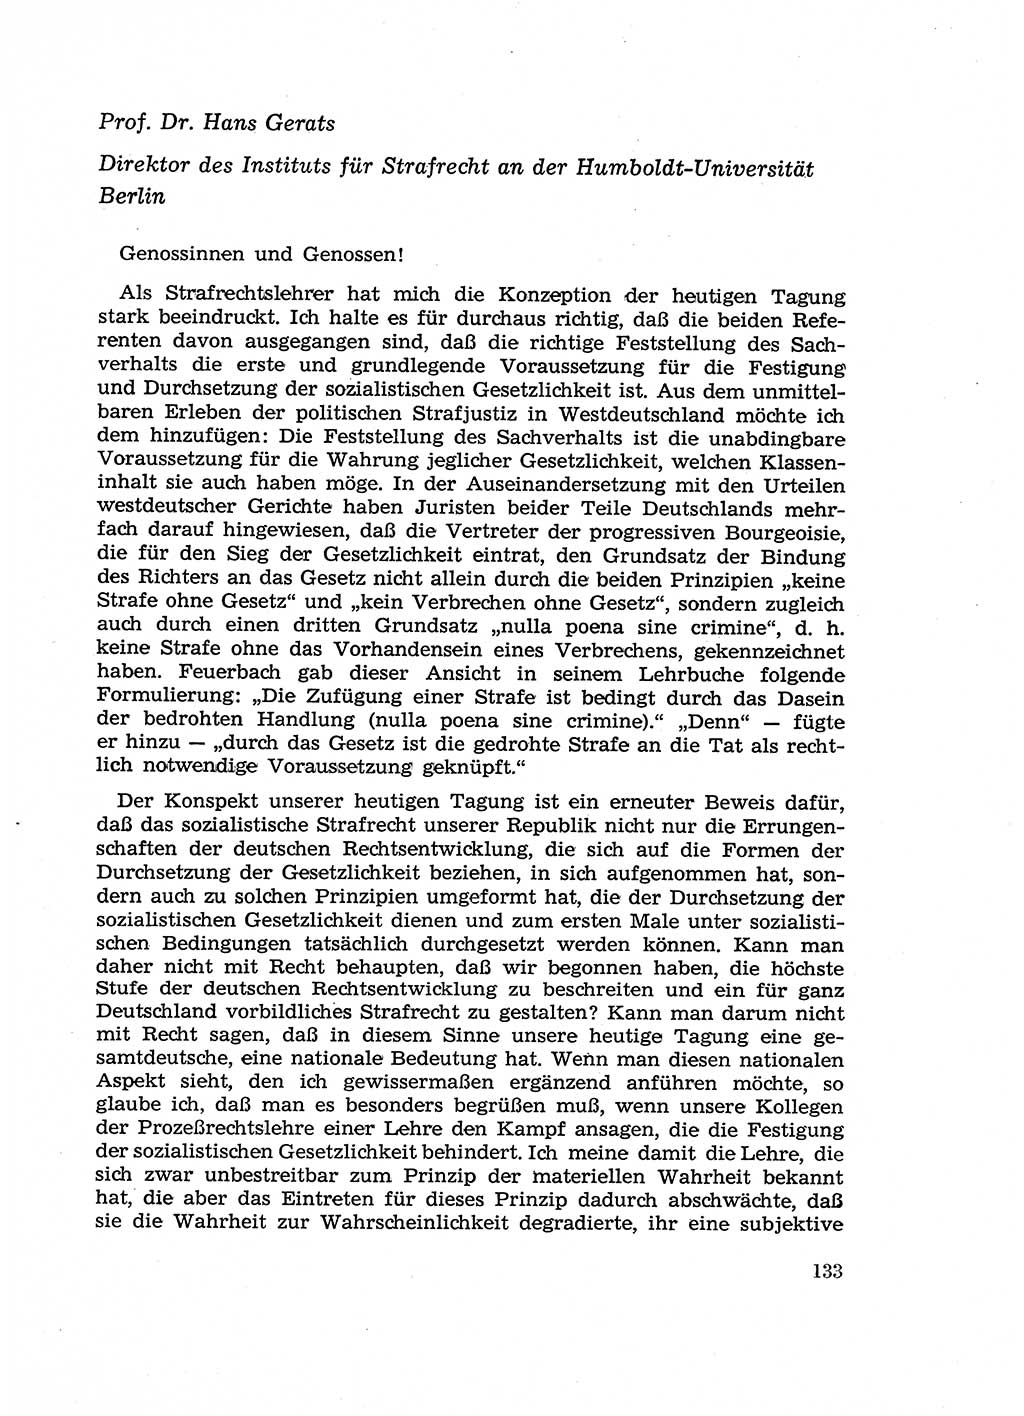 Fragen des Beweisrechts im Strafprozess [Deutsche Demokratische Republik (DDR)] 1956, Seite 133 (Fr. BeweisR. Str.-Proz. DDR 1956, S. 133)